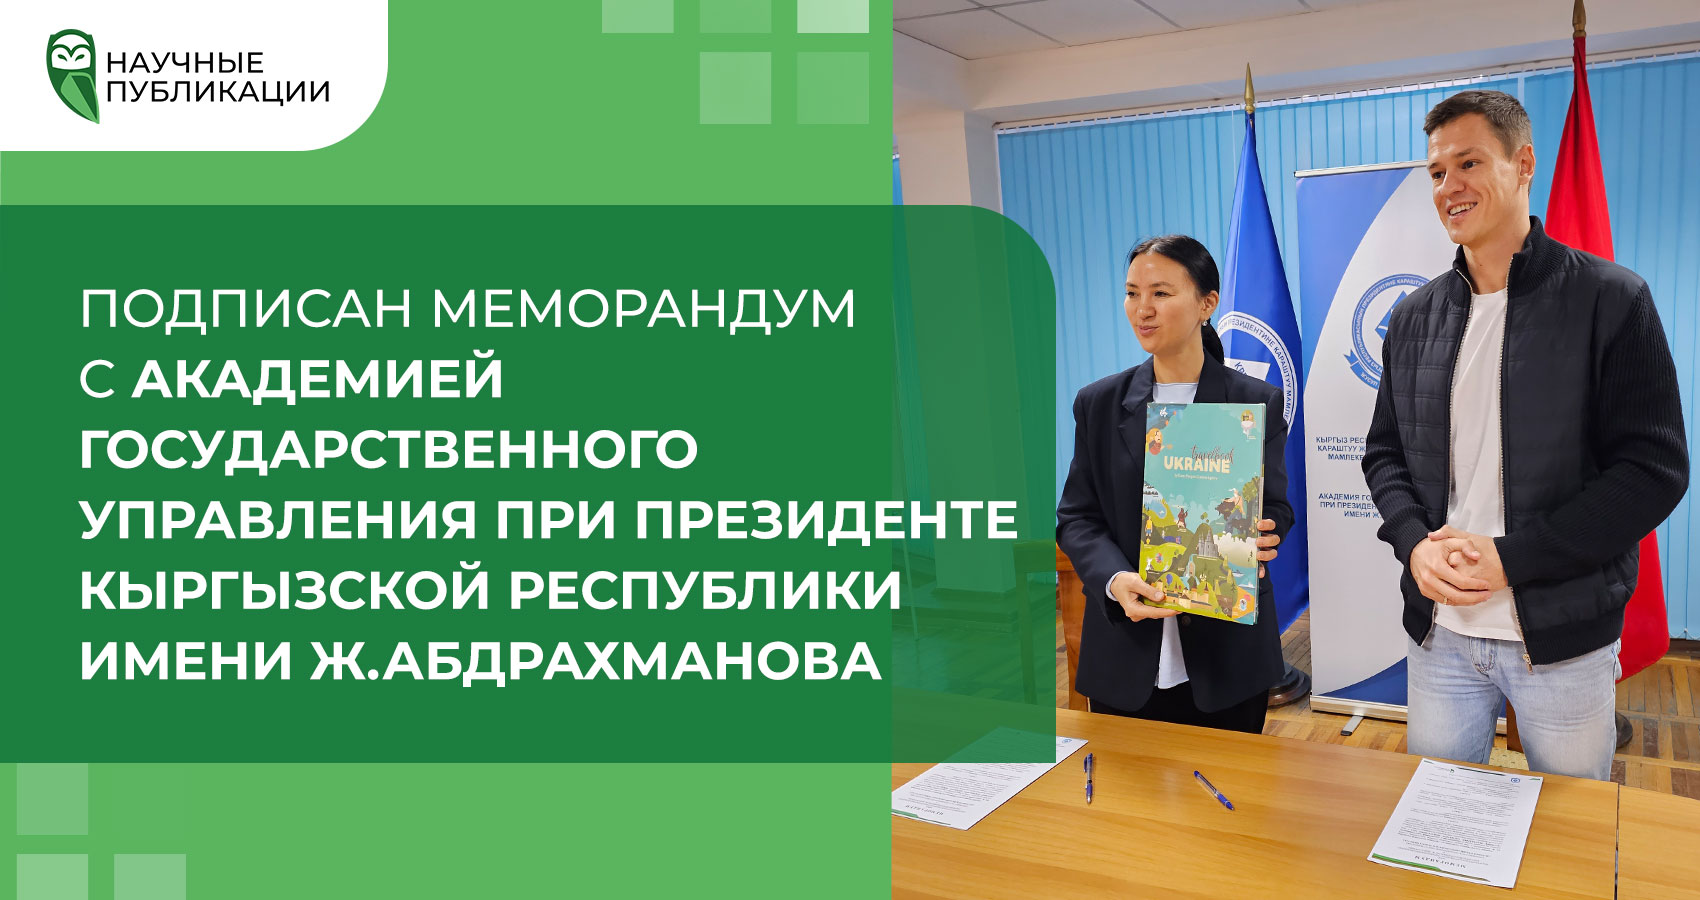 Подписан меморандум с Академией Государственного управления при Президенте Кыргызской Республики имени Ж.Абдрахманова